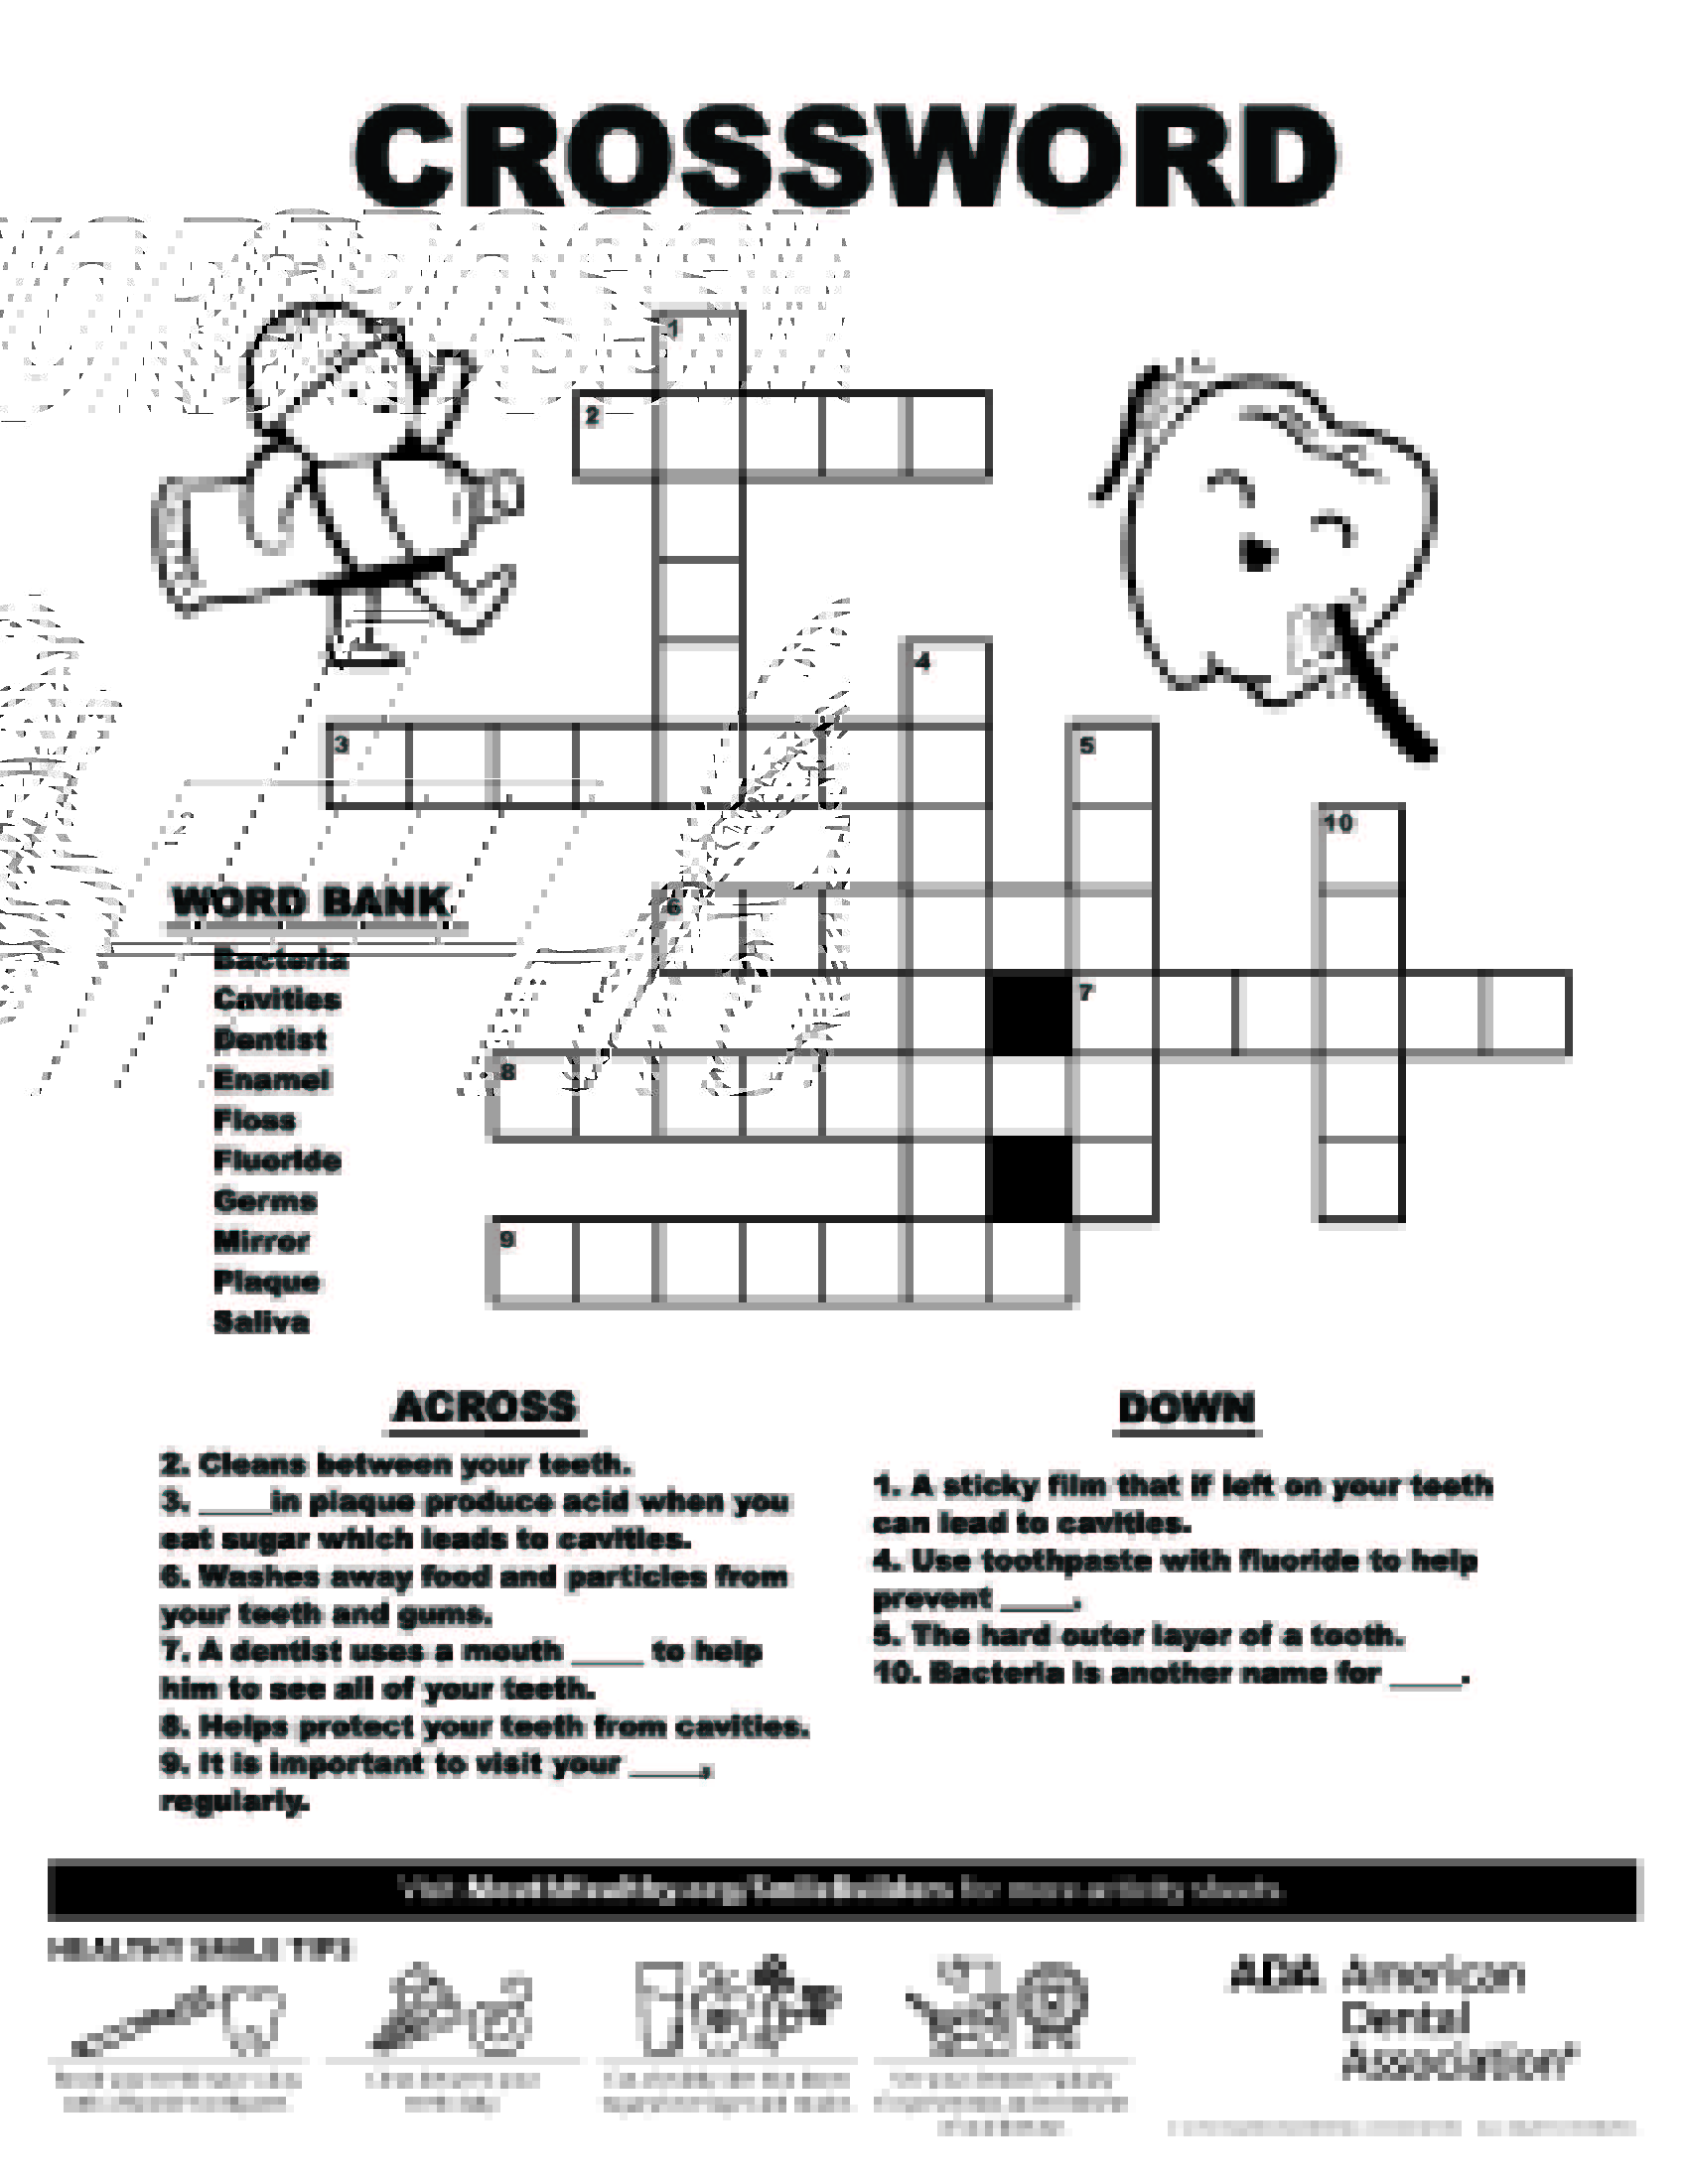 Your crossword. Crossword. Health crossword. Word crossword. Health crossword for Kids.